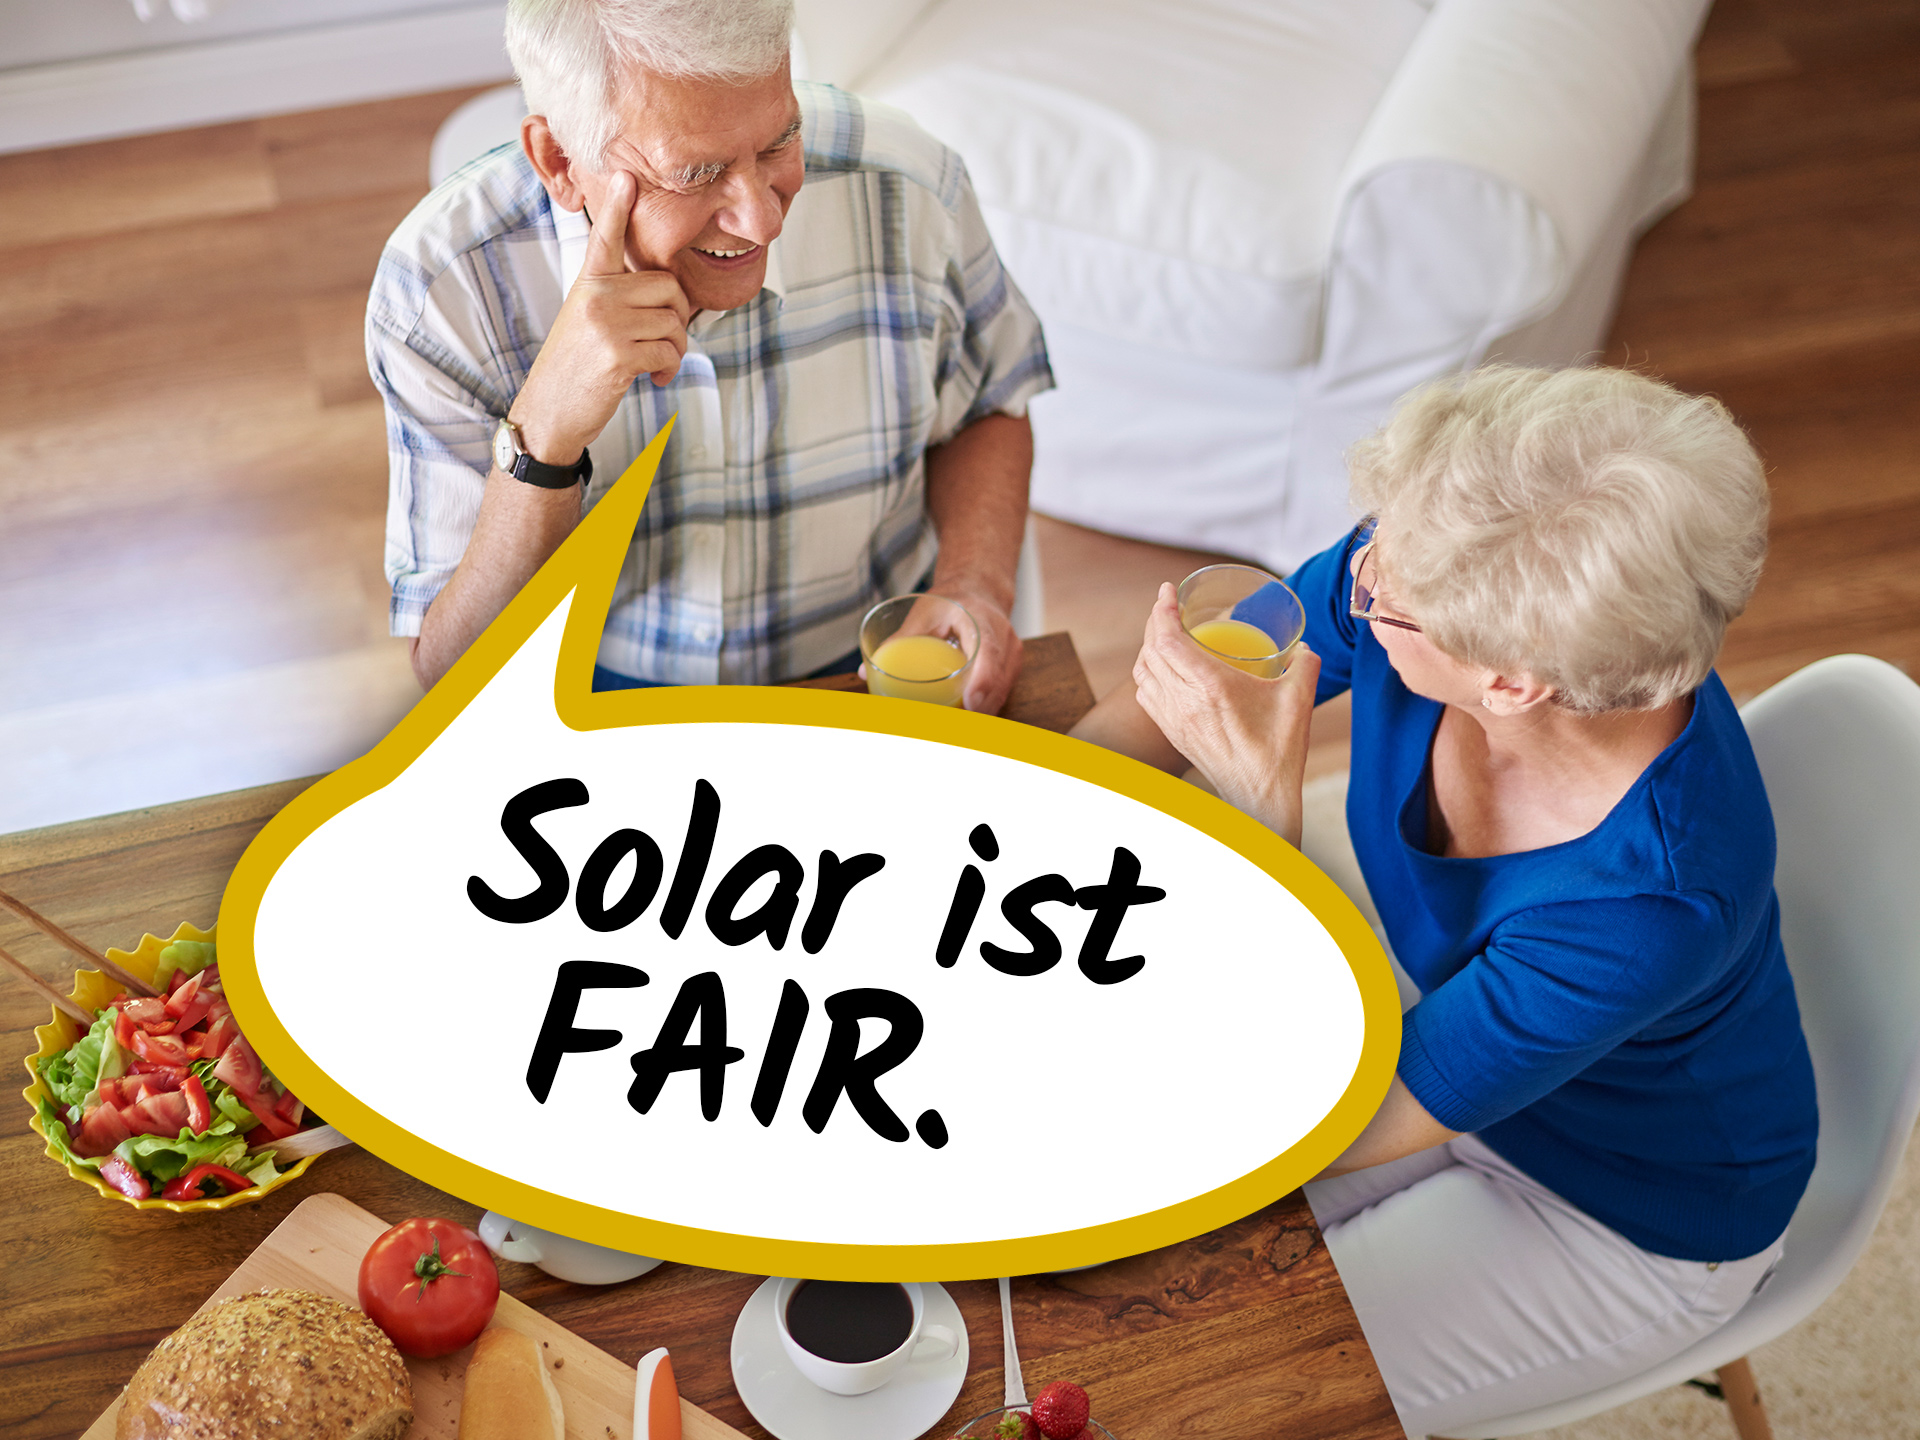 Solar ist fair.